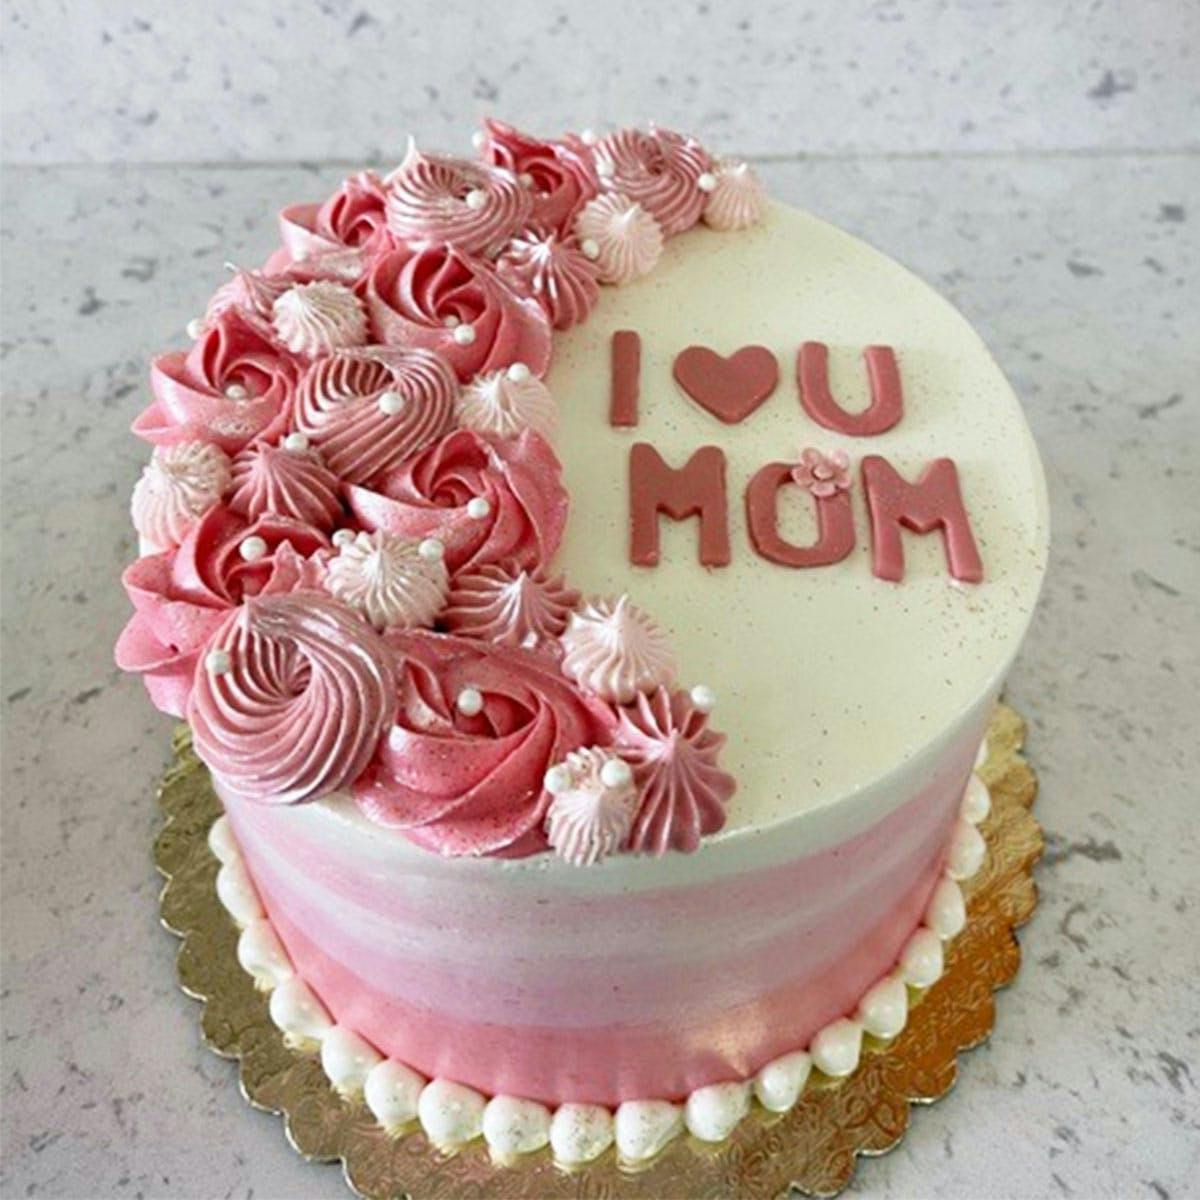 mum cake